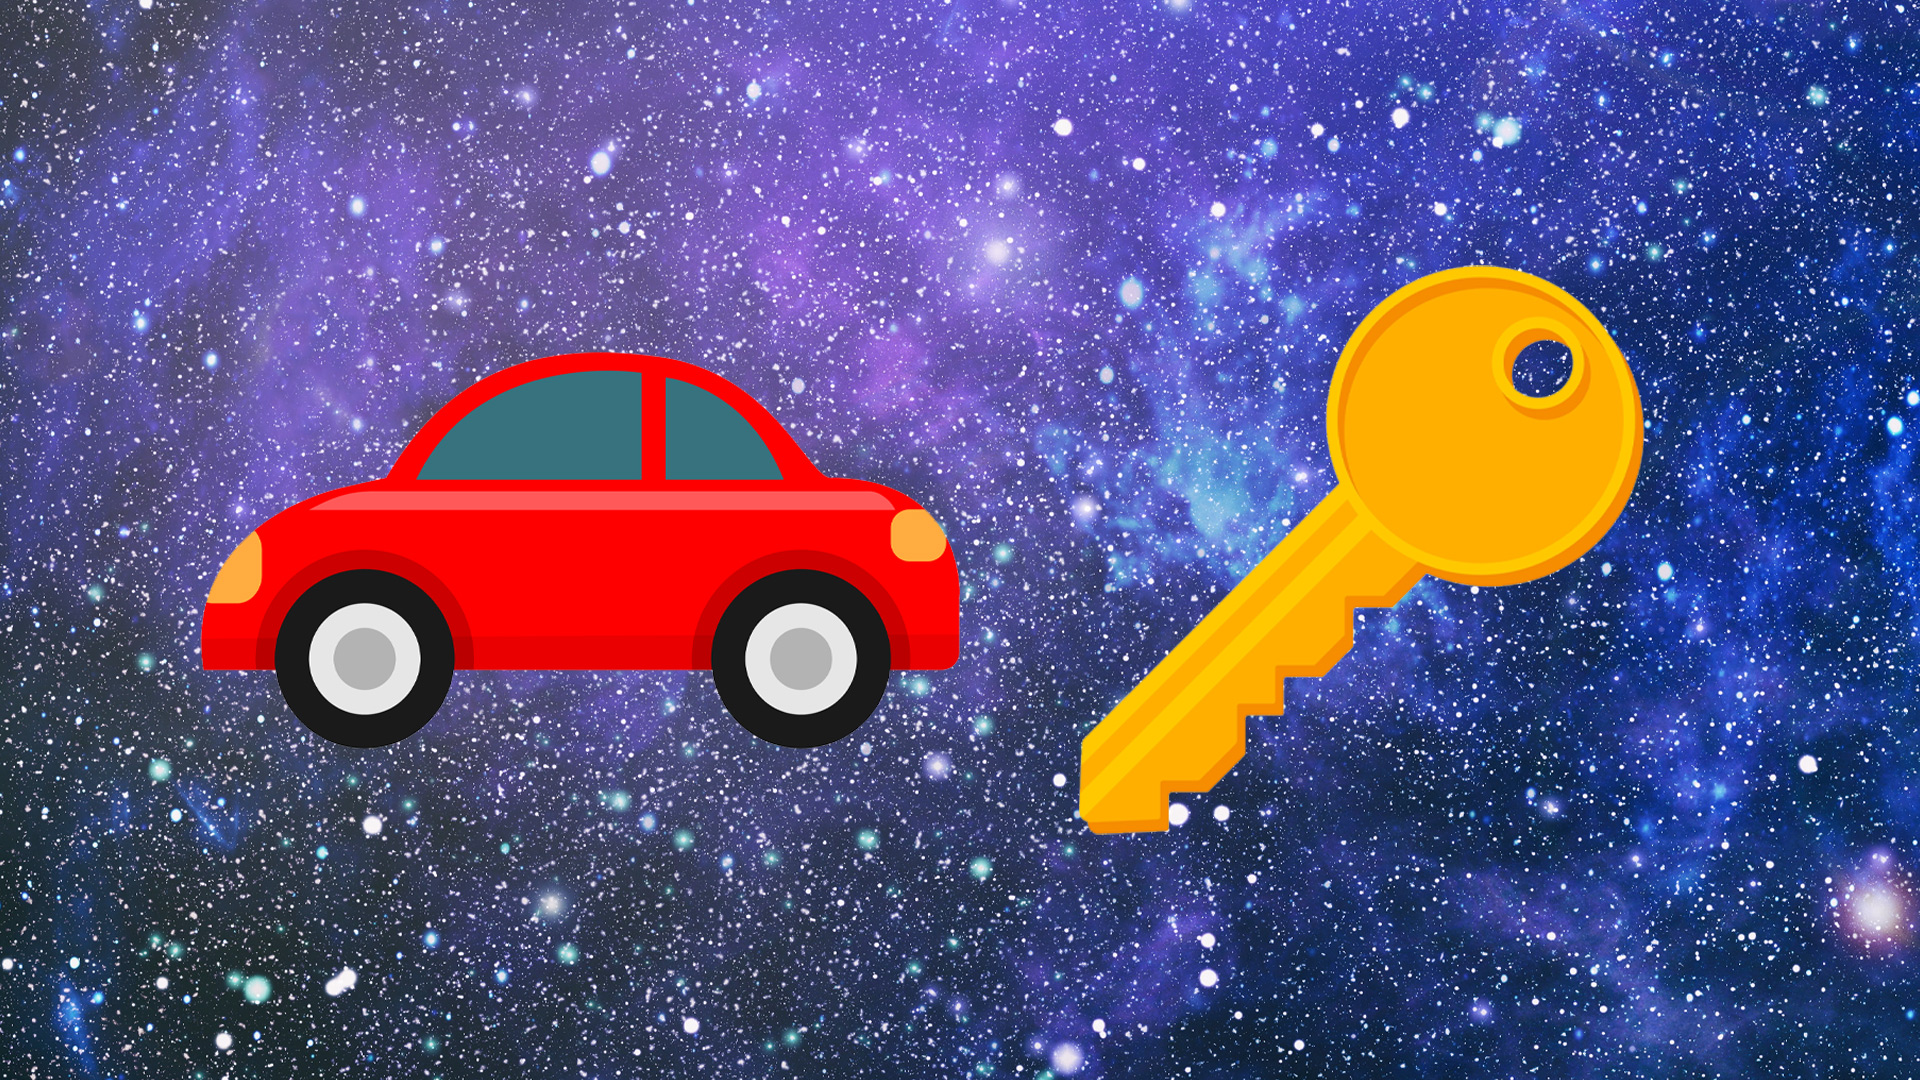 A car and key emoji